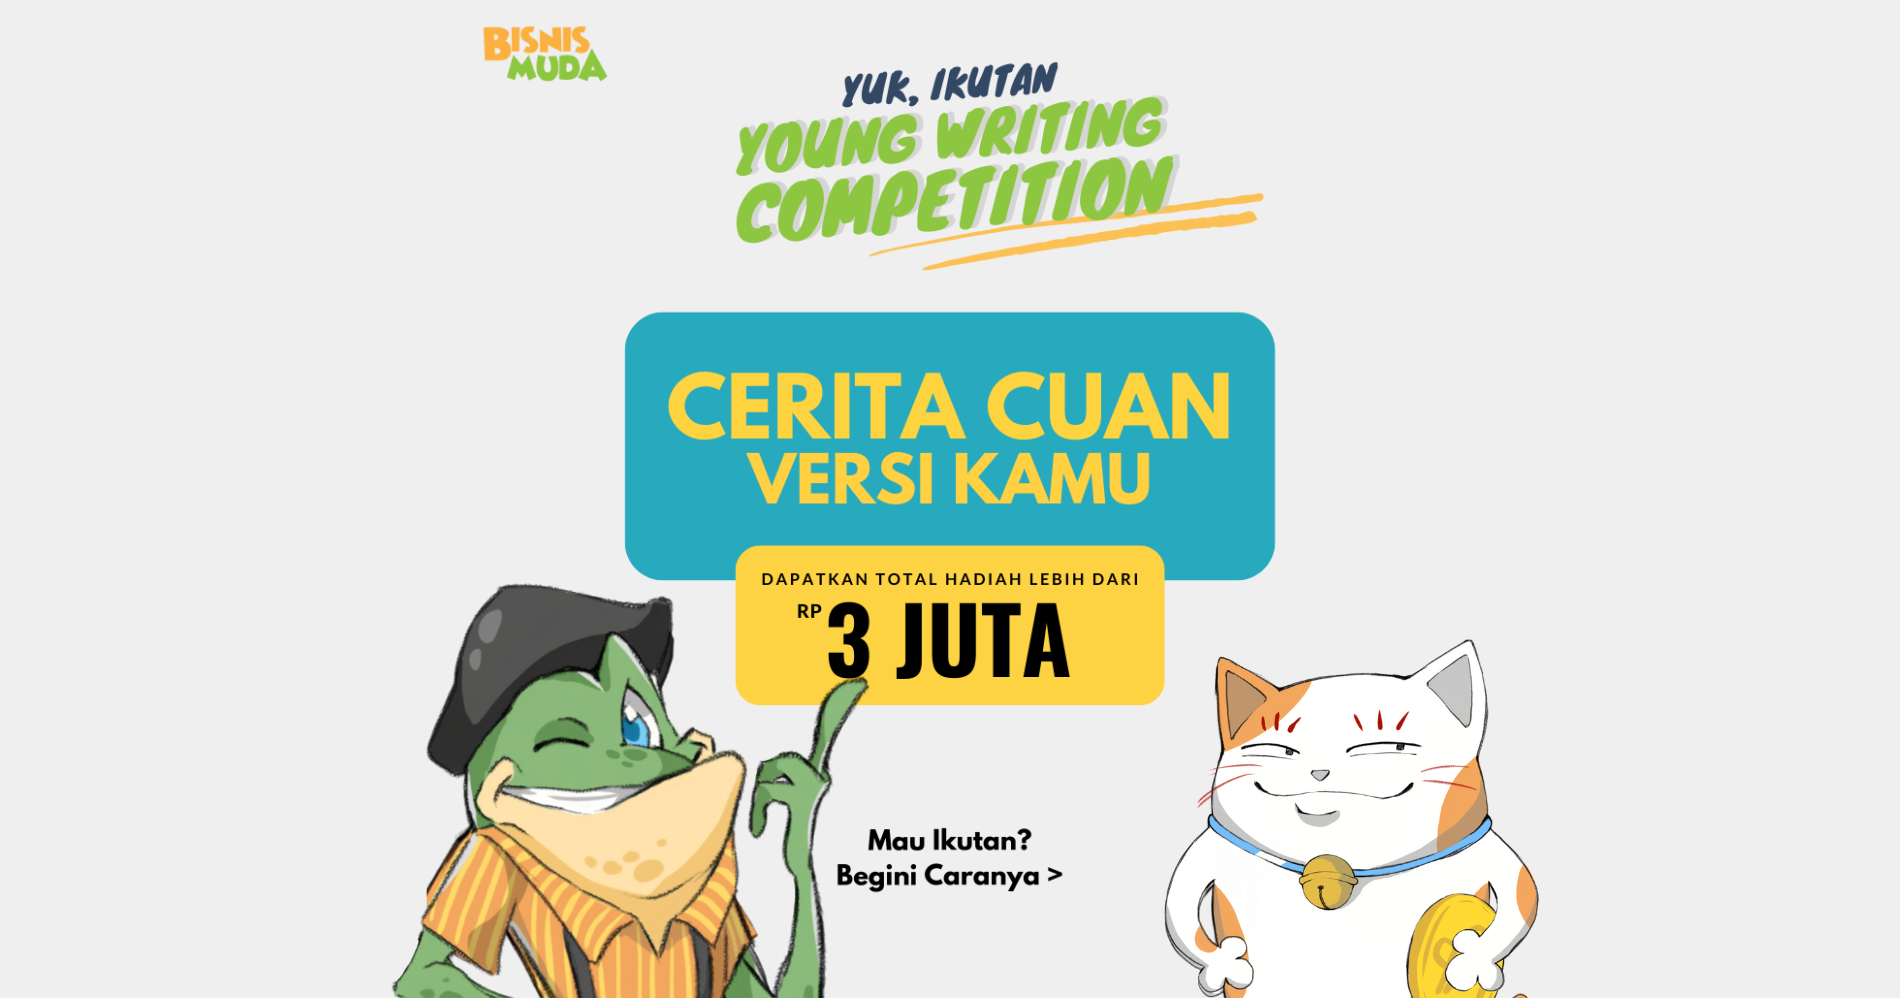 Young Writing Competition berhadiah total Rp3 Juta!